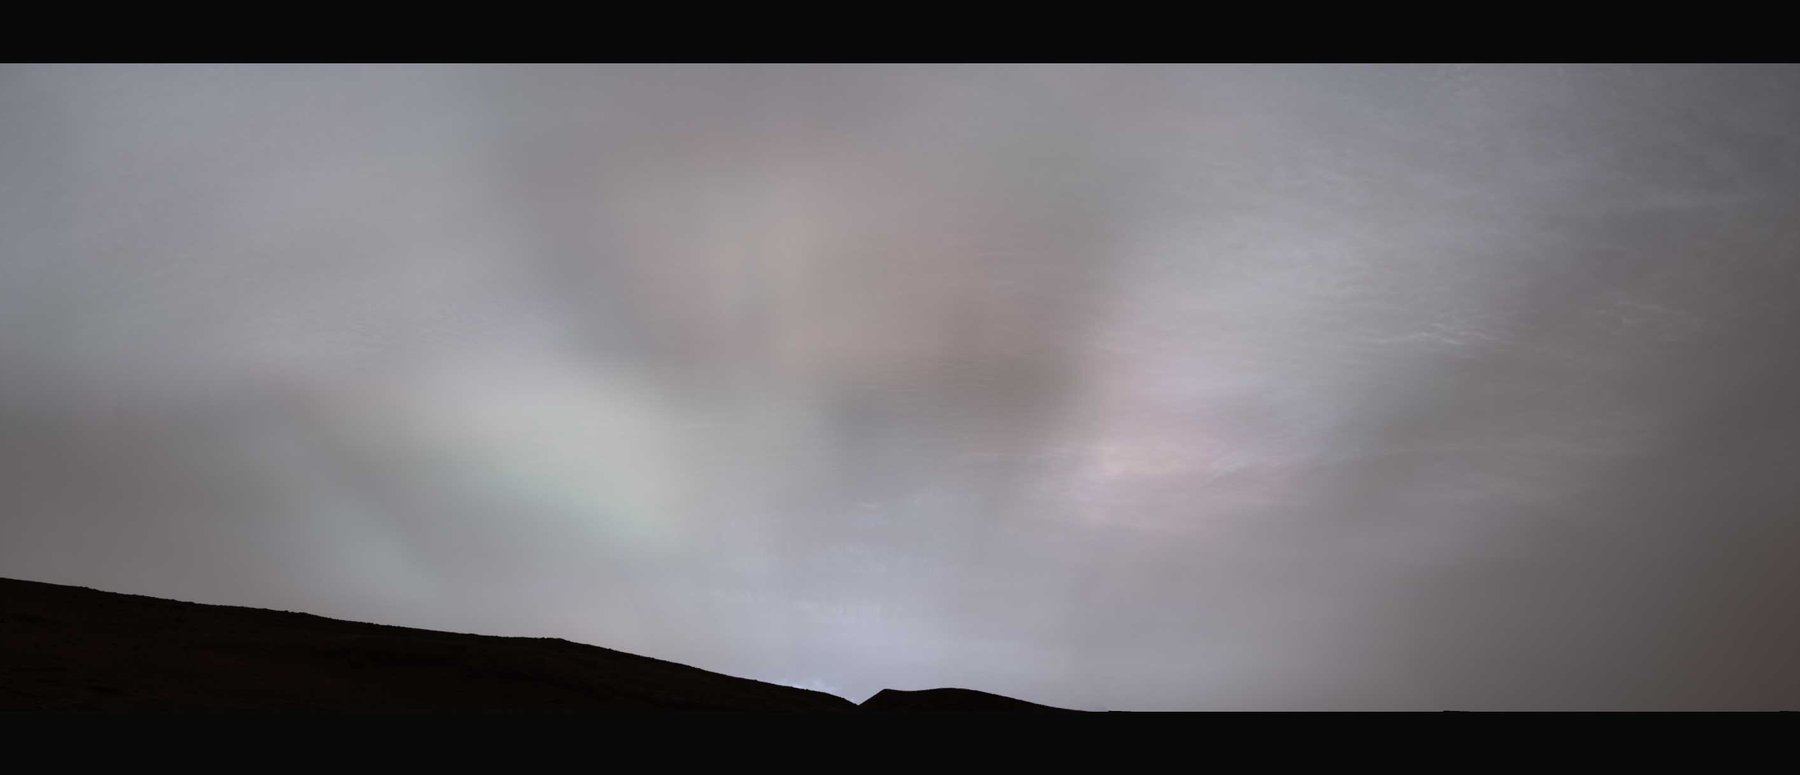 Марсоход НАСА Curiosity сделал потрясающие снимки солнечных лучей на Марсе